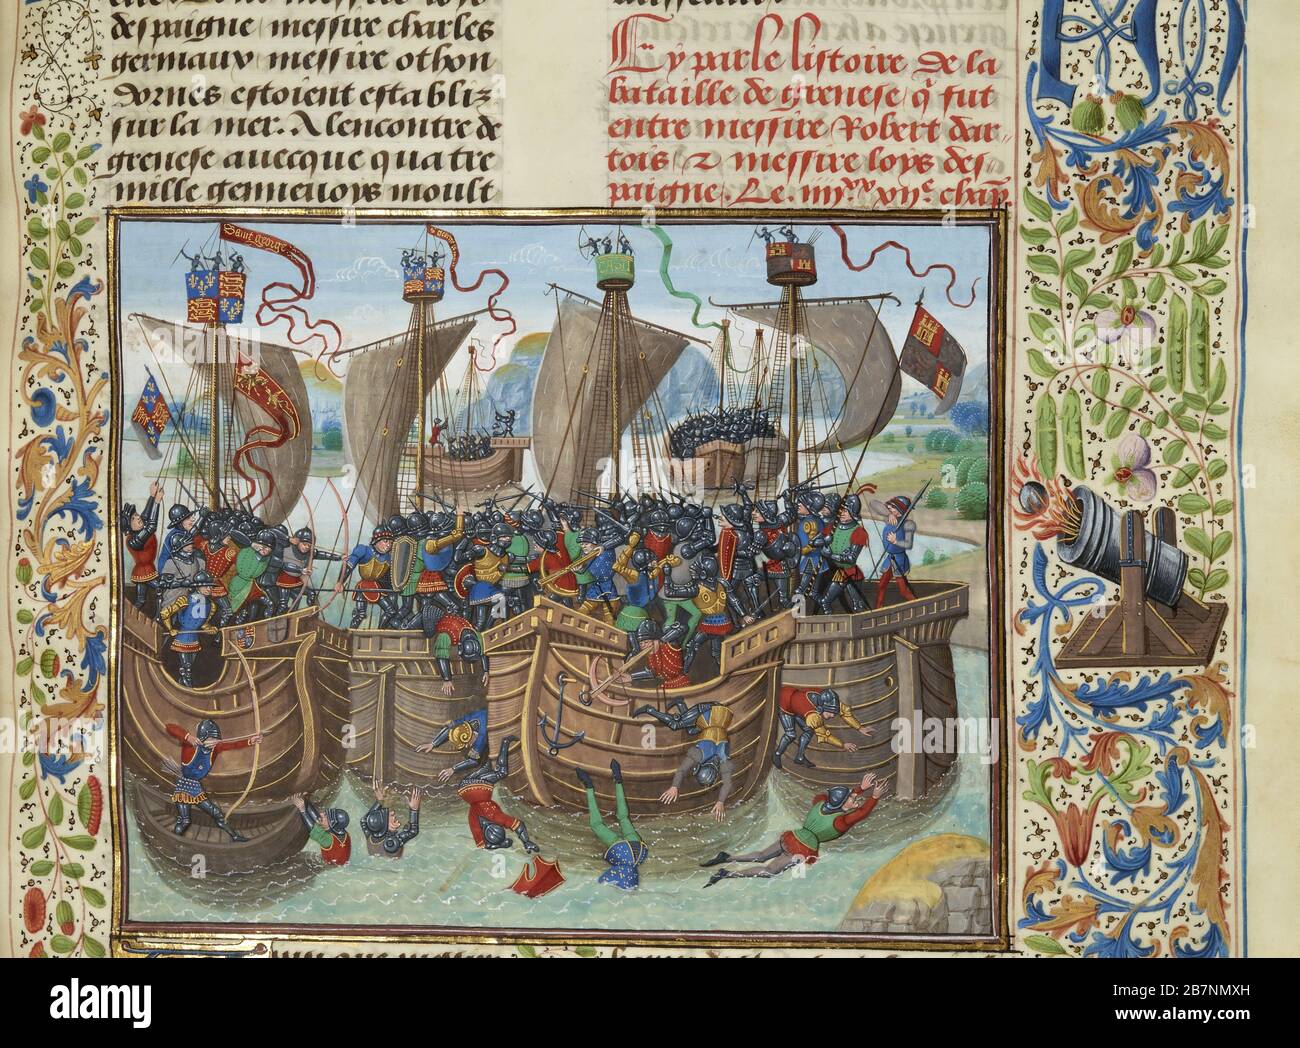 La bataille navale de Guernesey, 1342 (miniature des grandes chroniques de France par Jean Froissart), CA 1470-1475. Trouvé dans la Collection de Biblioth&#xe8;que nationale de France. Banque D'Images